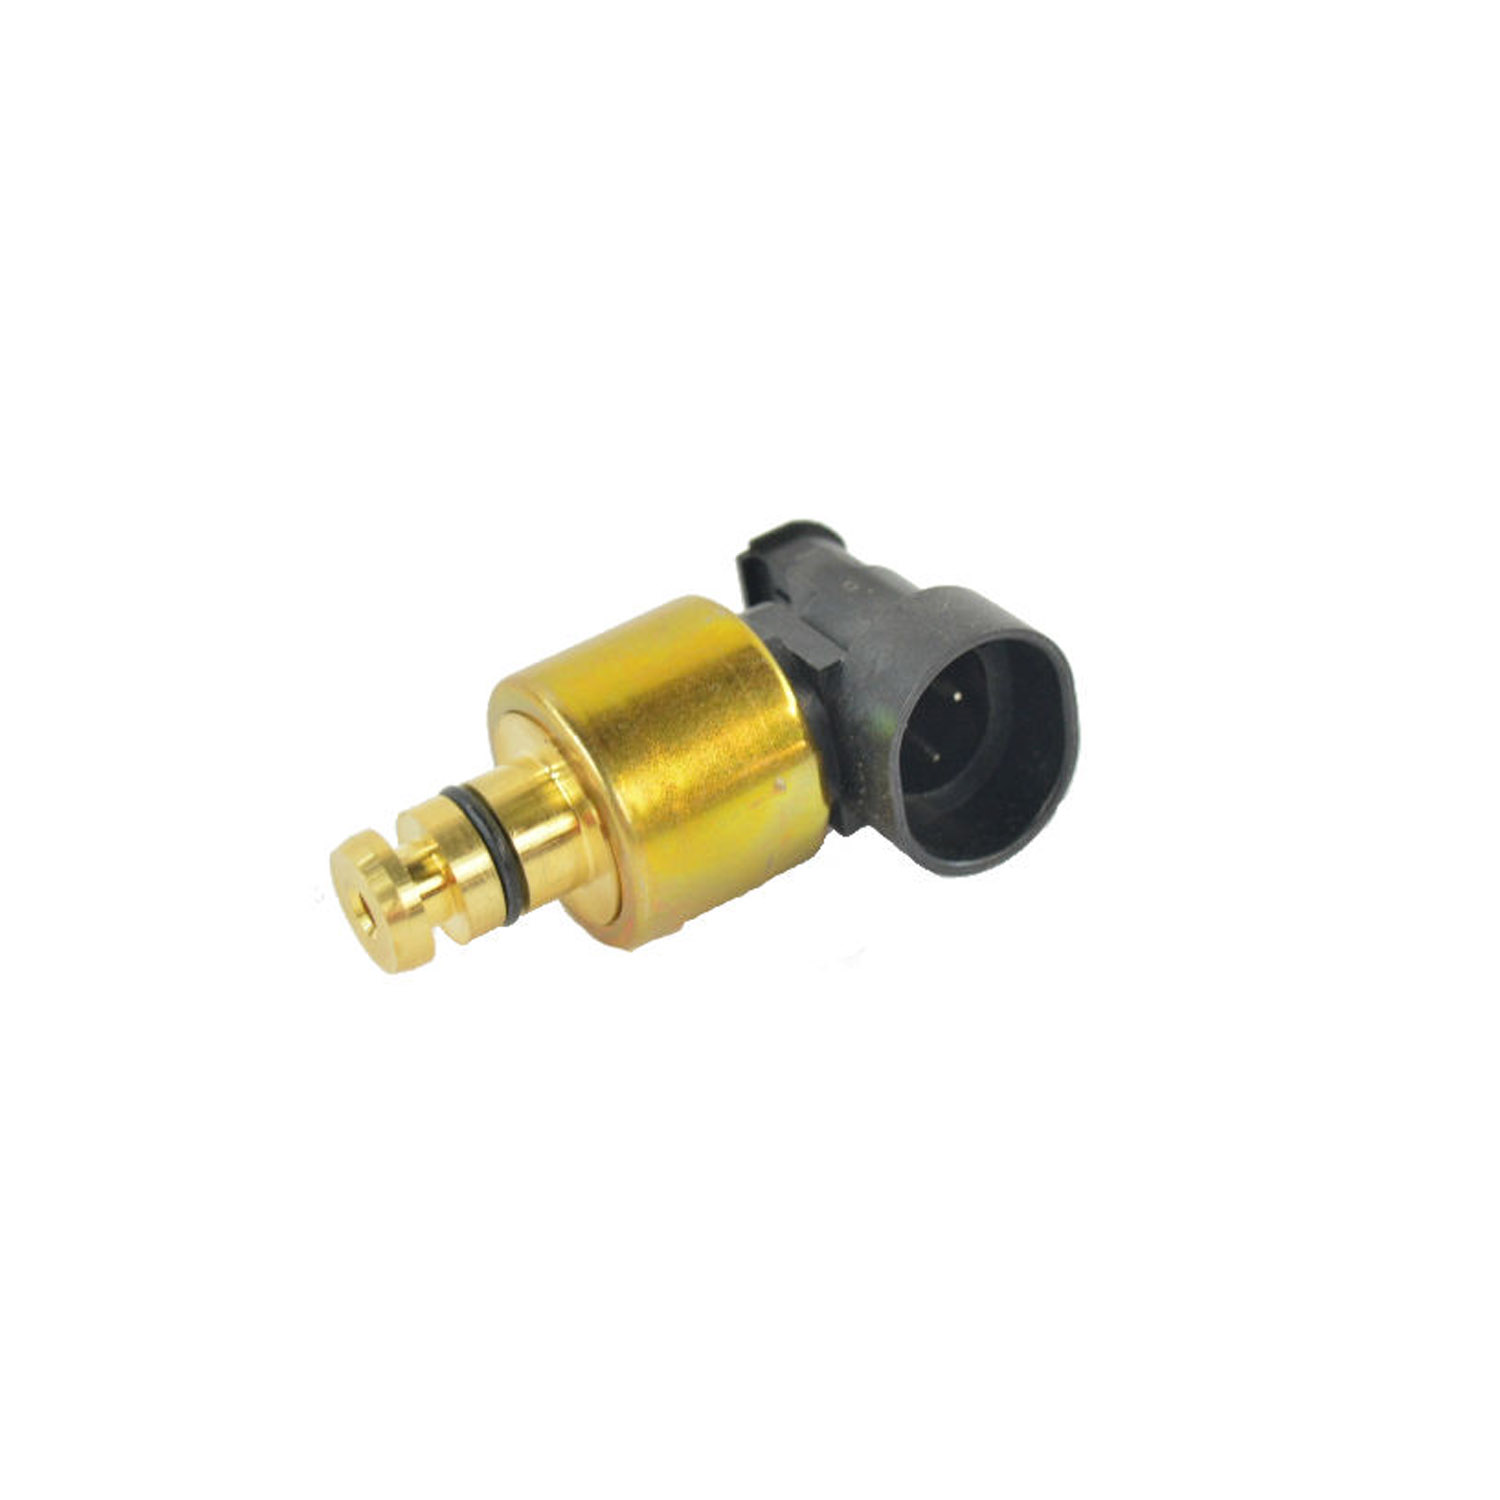 MOPAR PARTS - Auto Trans Pressure Sensor Transducer - MOP 56041403AA